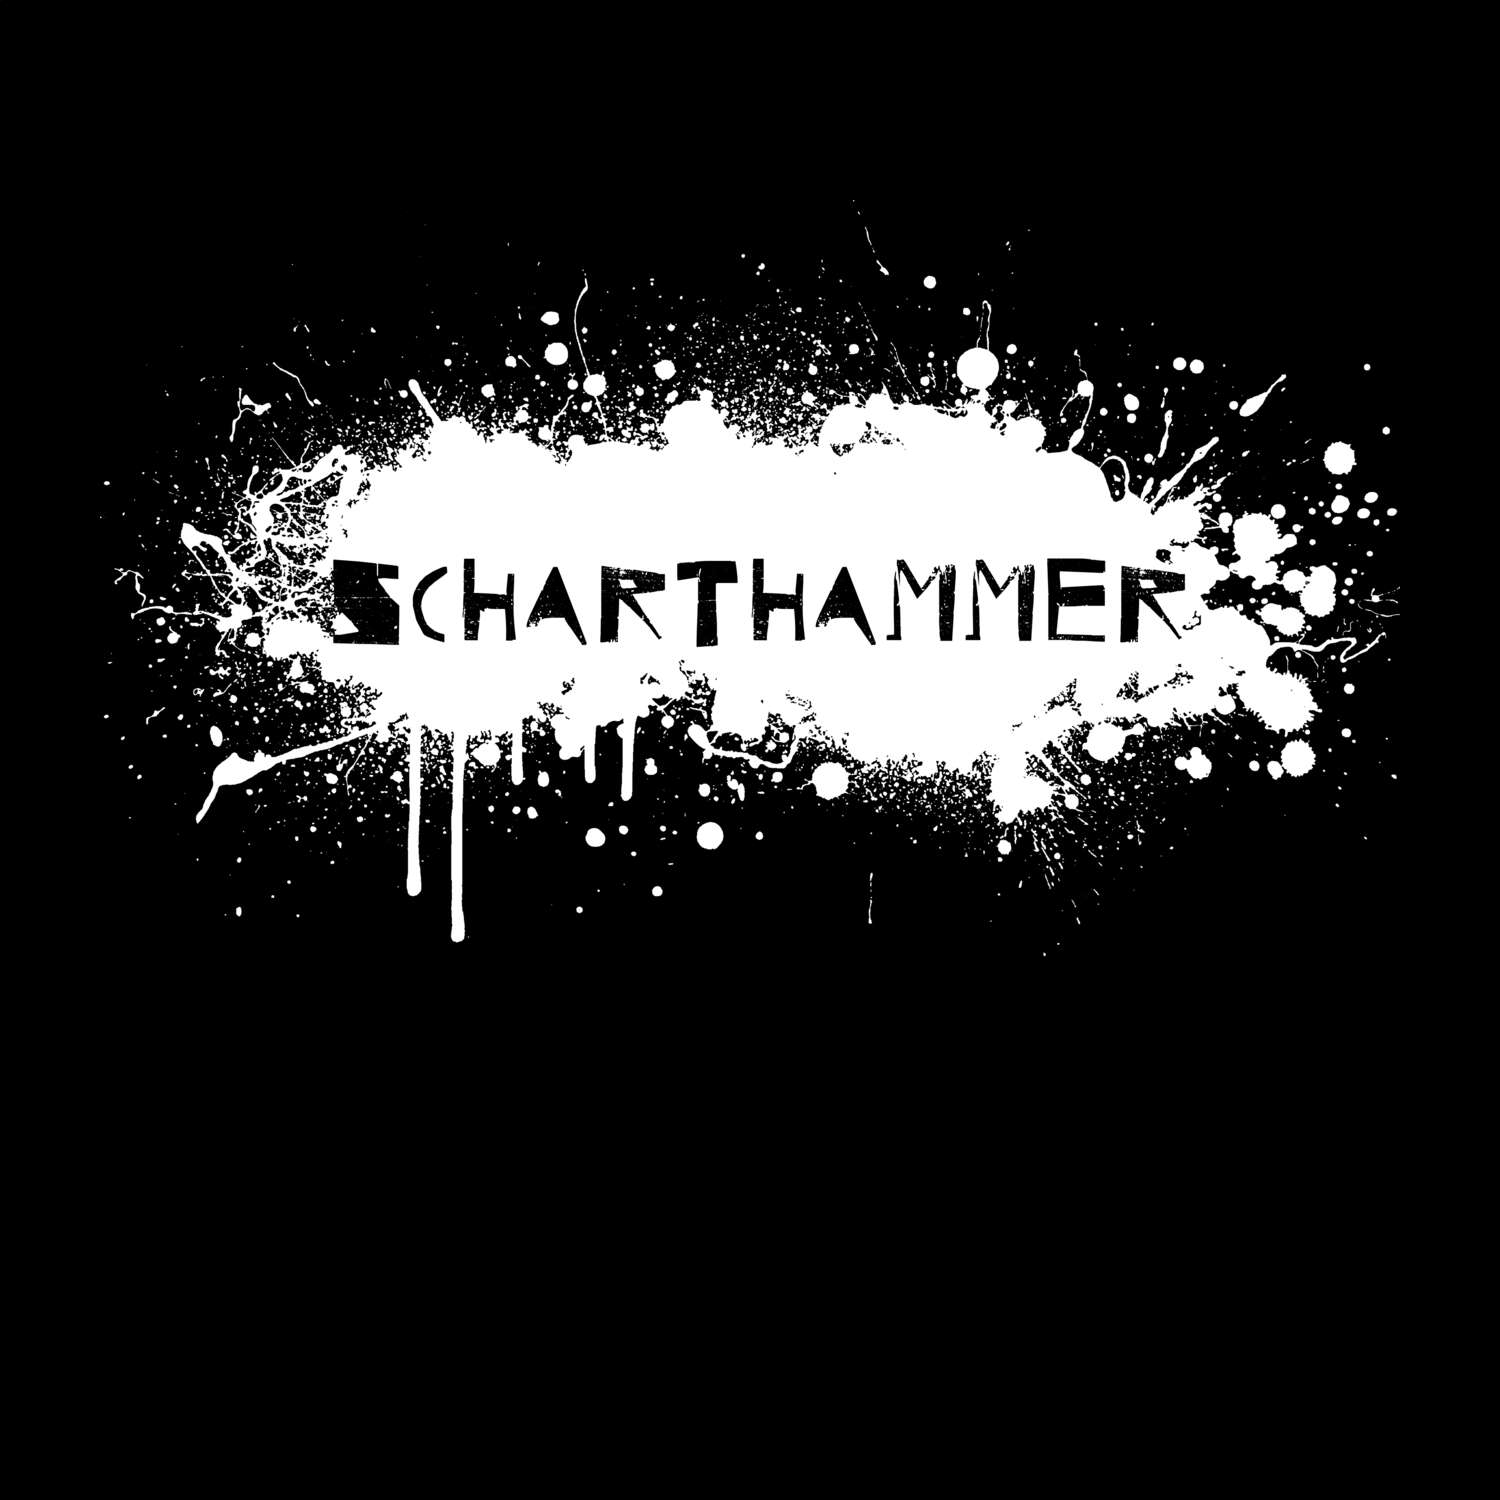 Scharthammer T-Shirt »Paint Splash Punk«